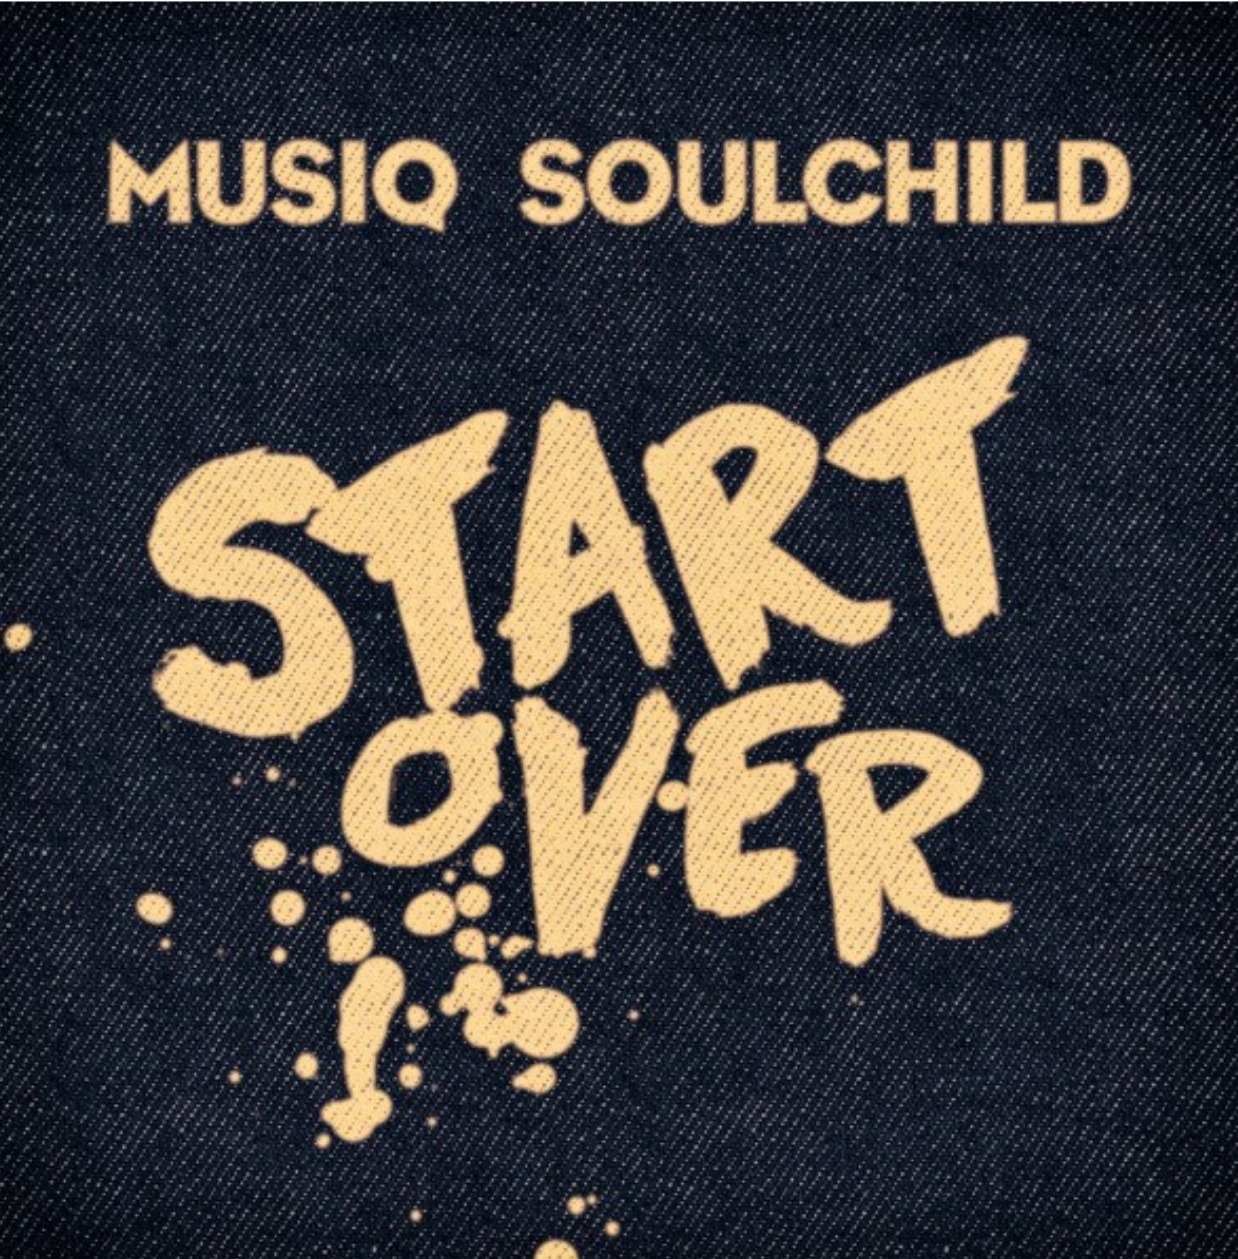 New Video: Musiq Soulchild - Start Over